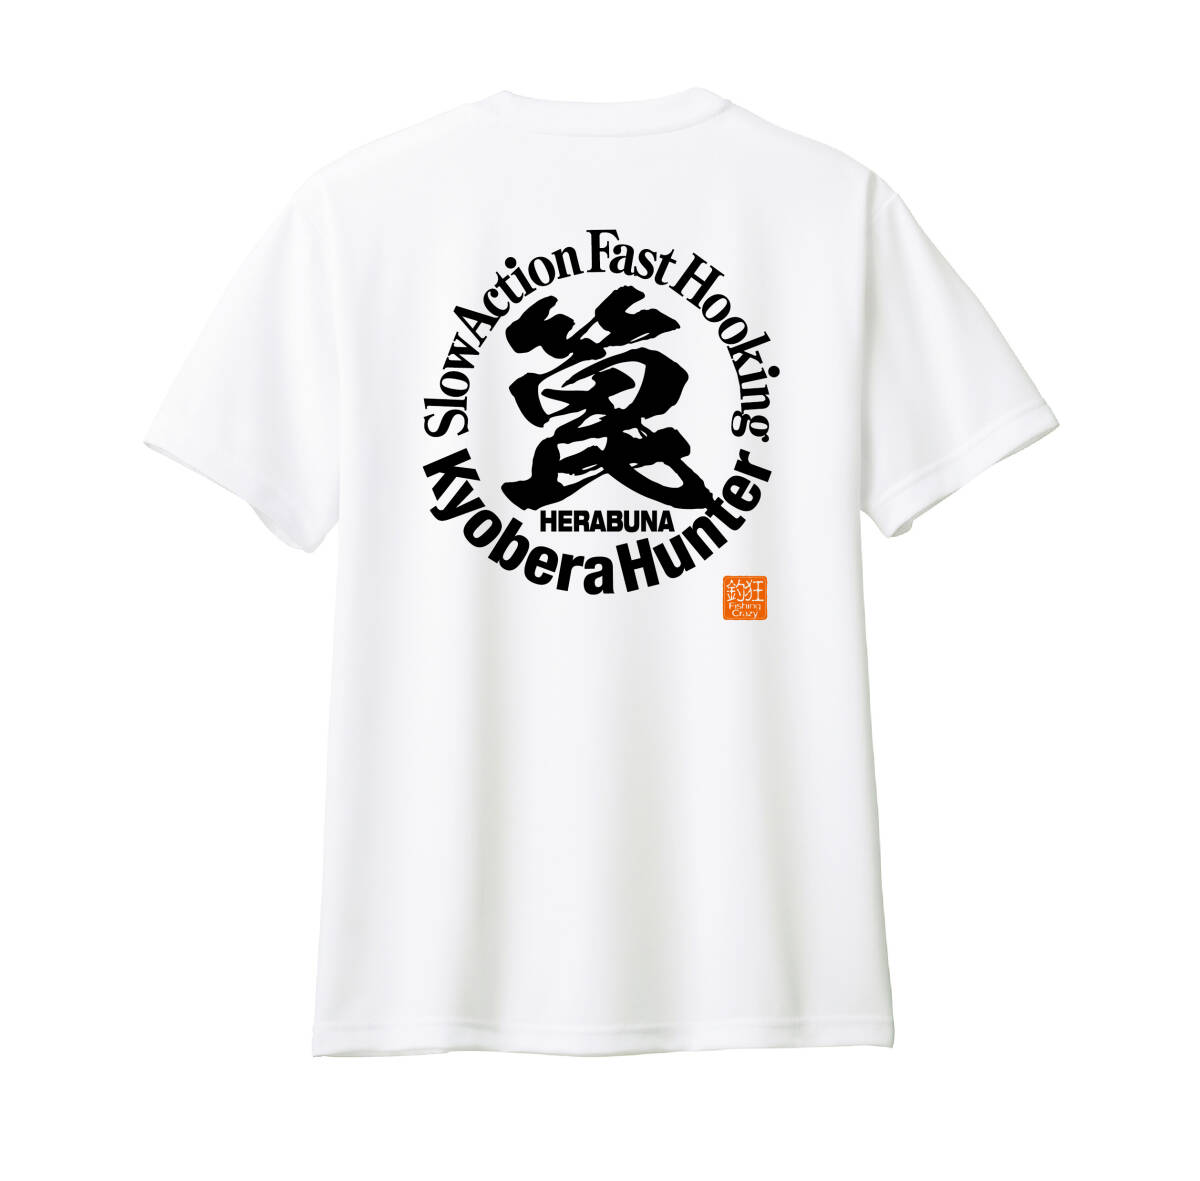 ☆ ヘラブナ釣り漢字Tシャツ　巨ベラ/へら鮒/フナ釣り/ドライTシャツ_ホワイト